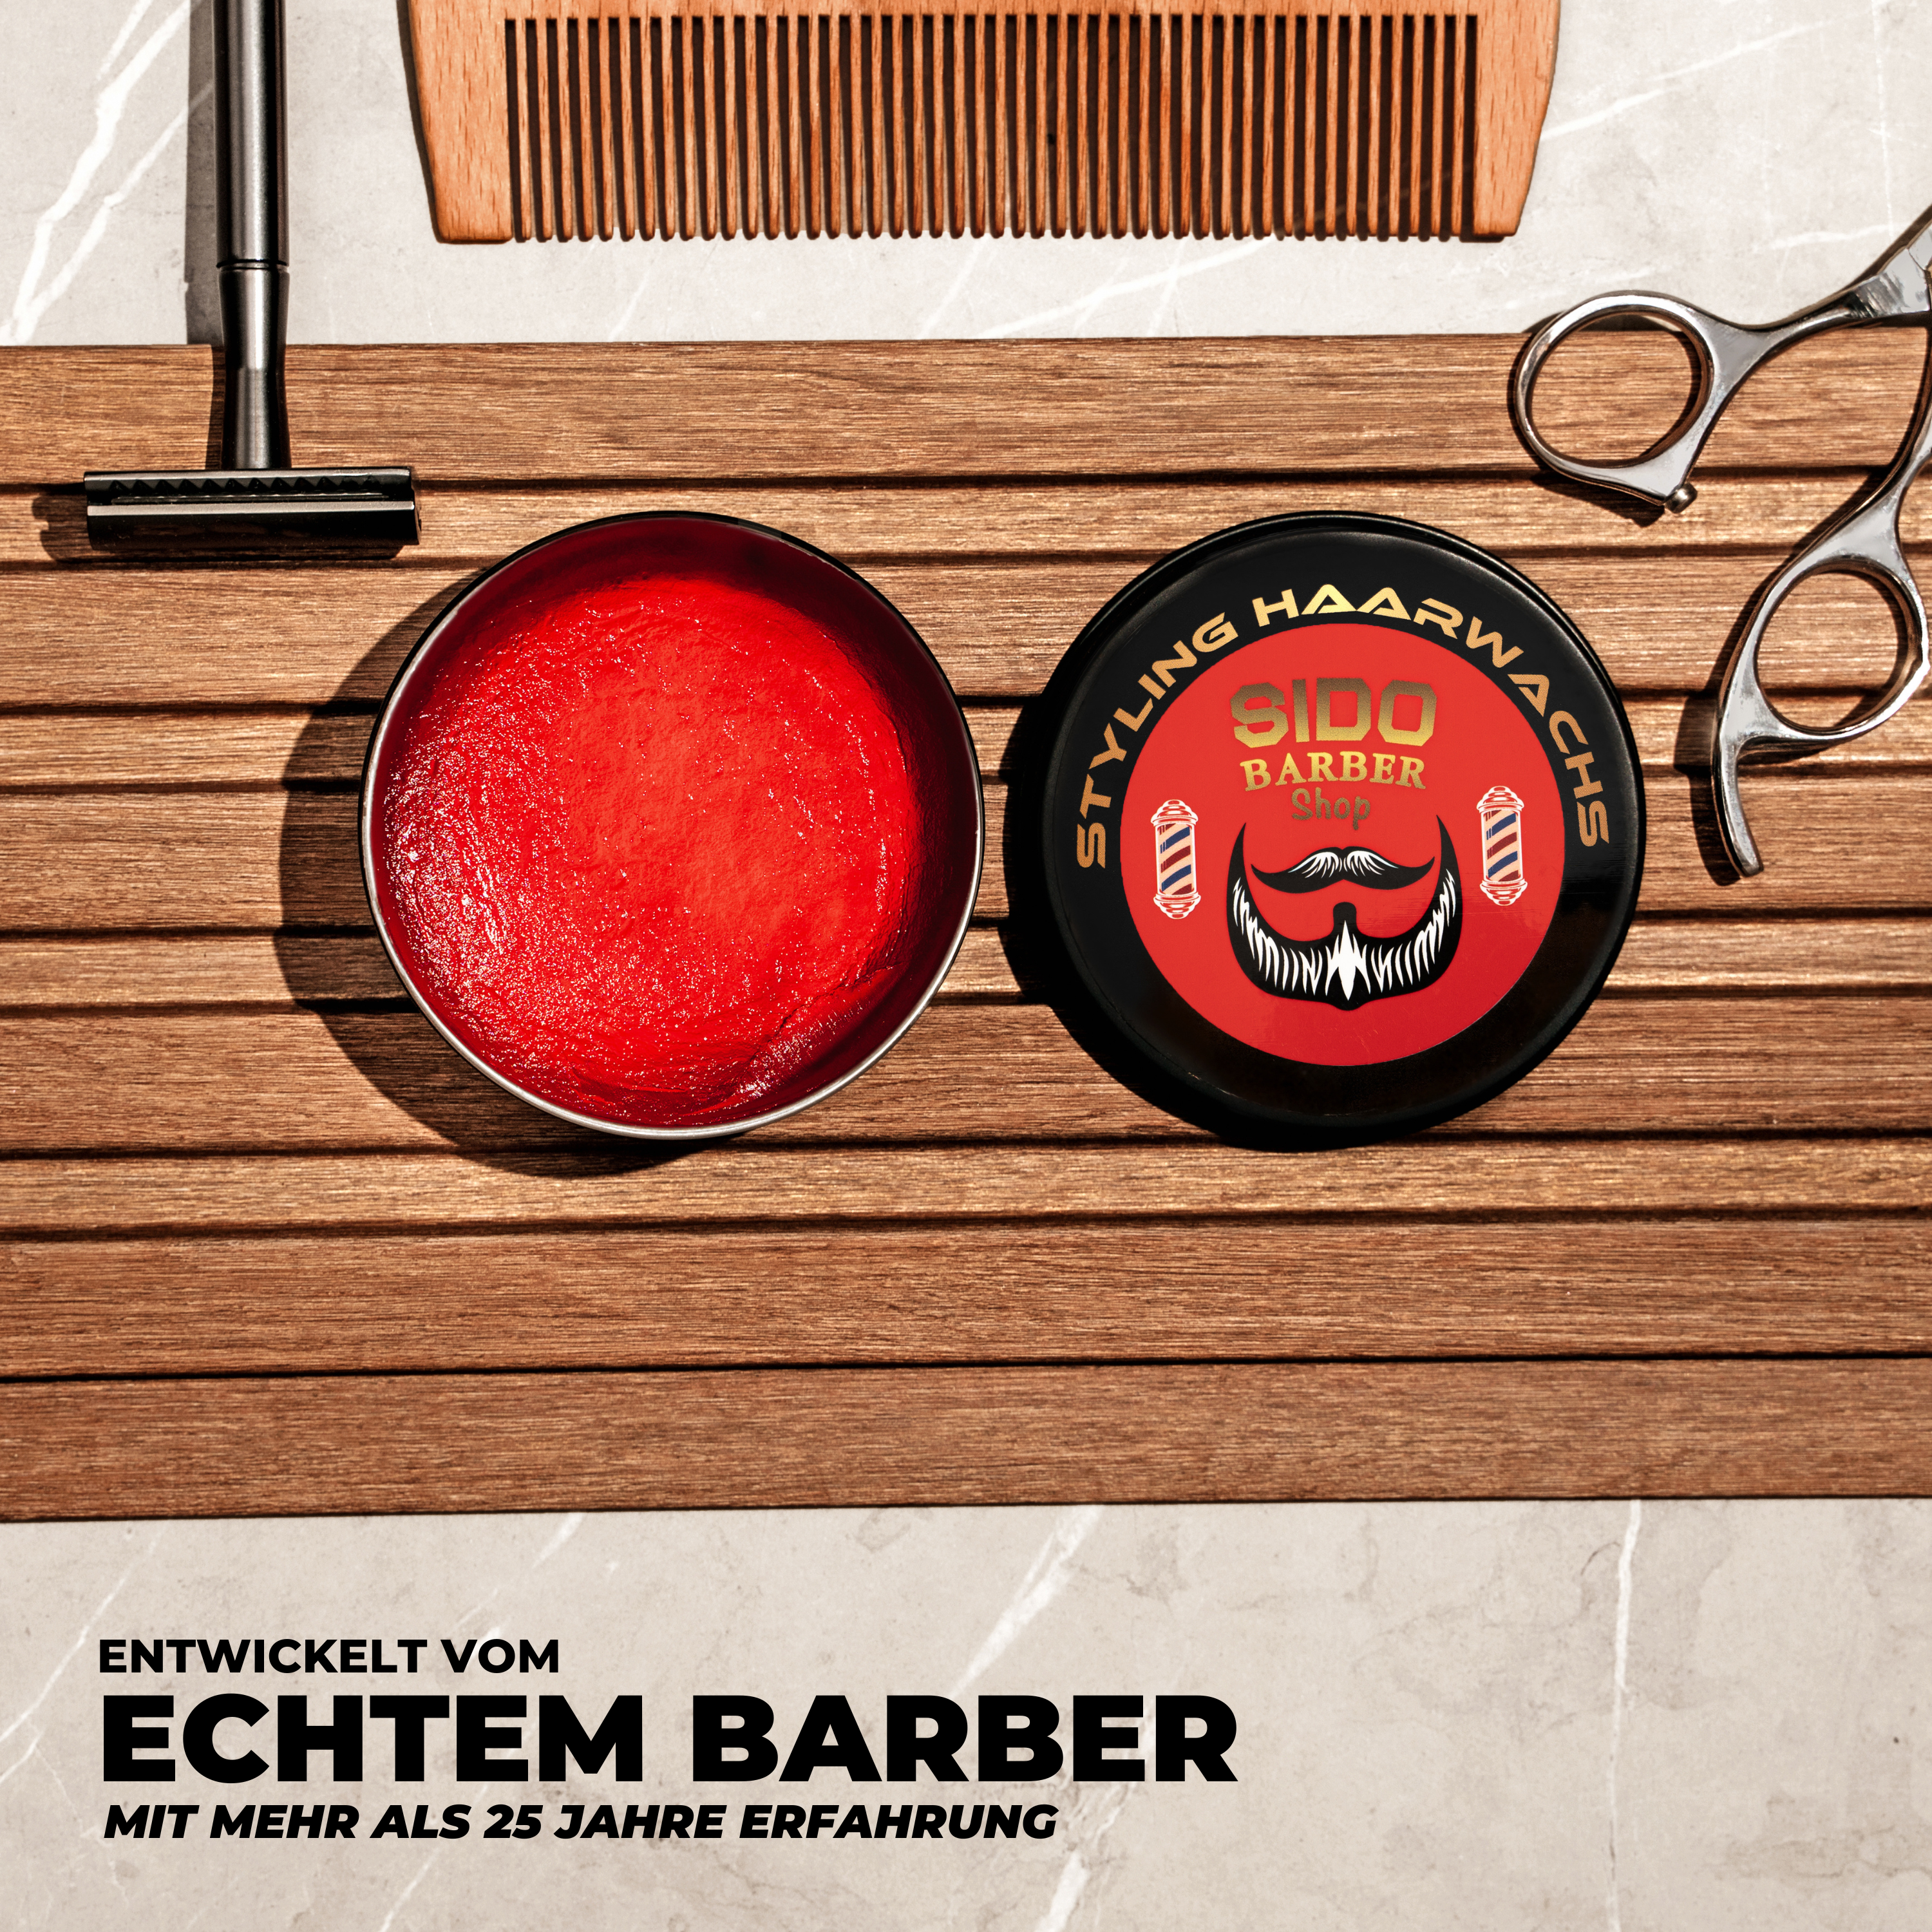 SIDO BARBER Shop Haarwachs Männer mit Farbe (Rot) - Friseur Haar Wachs für starken Halt - Hair Wax für Herren ohne Schmieren, Kleben & Rückstände